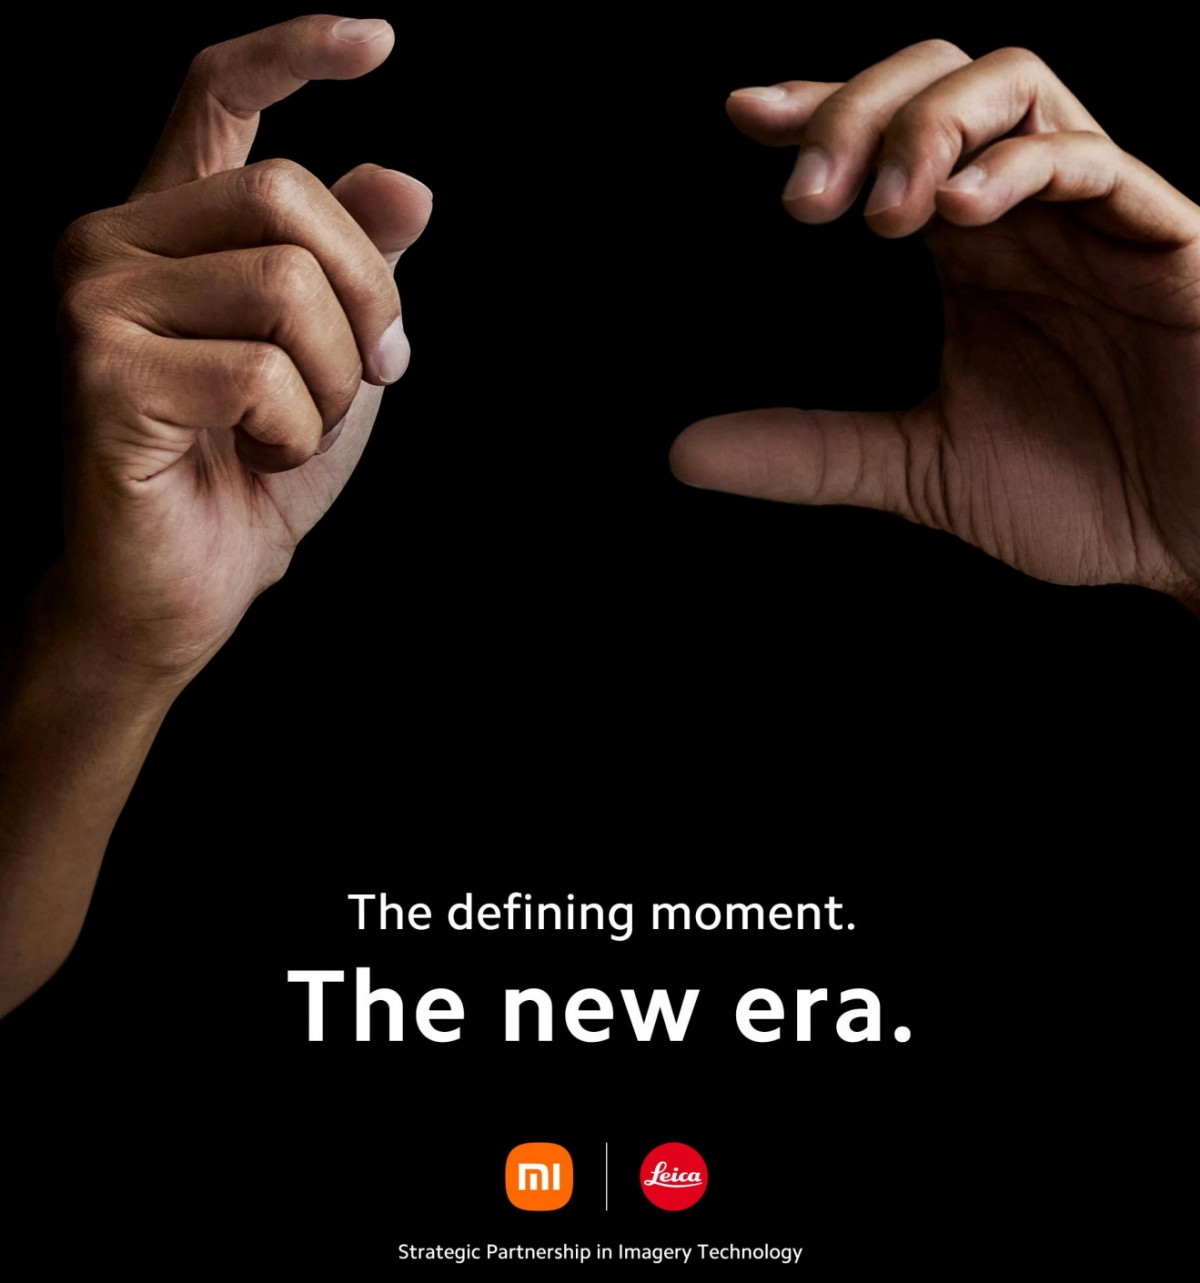 Xiaomi ha annunciato ufficialmente una partnership con Leica, con il primo telefono sviluppato in collaborazione in arrivo a luglio